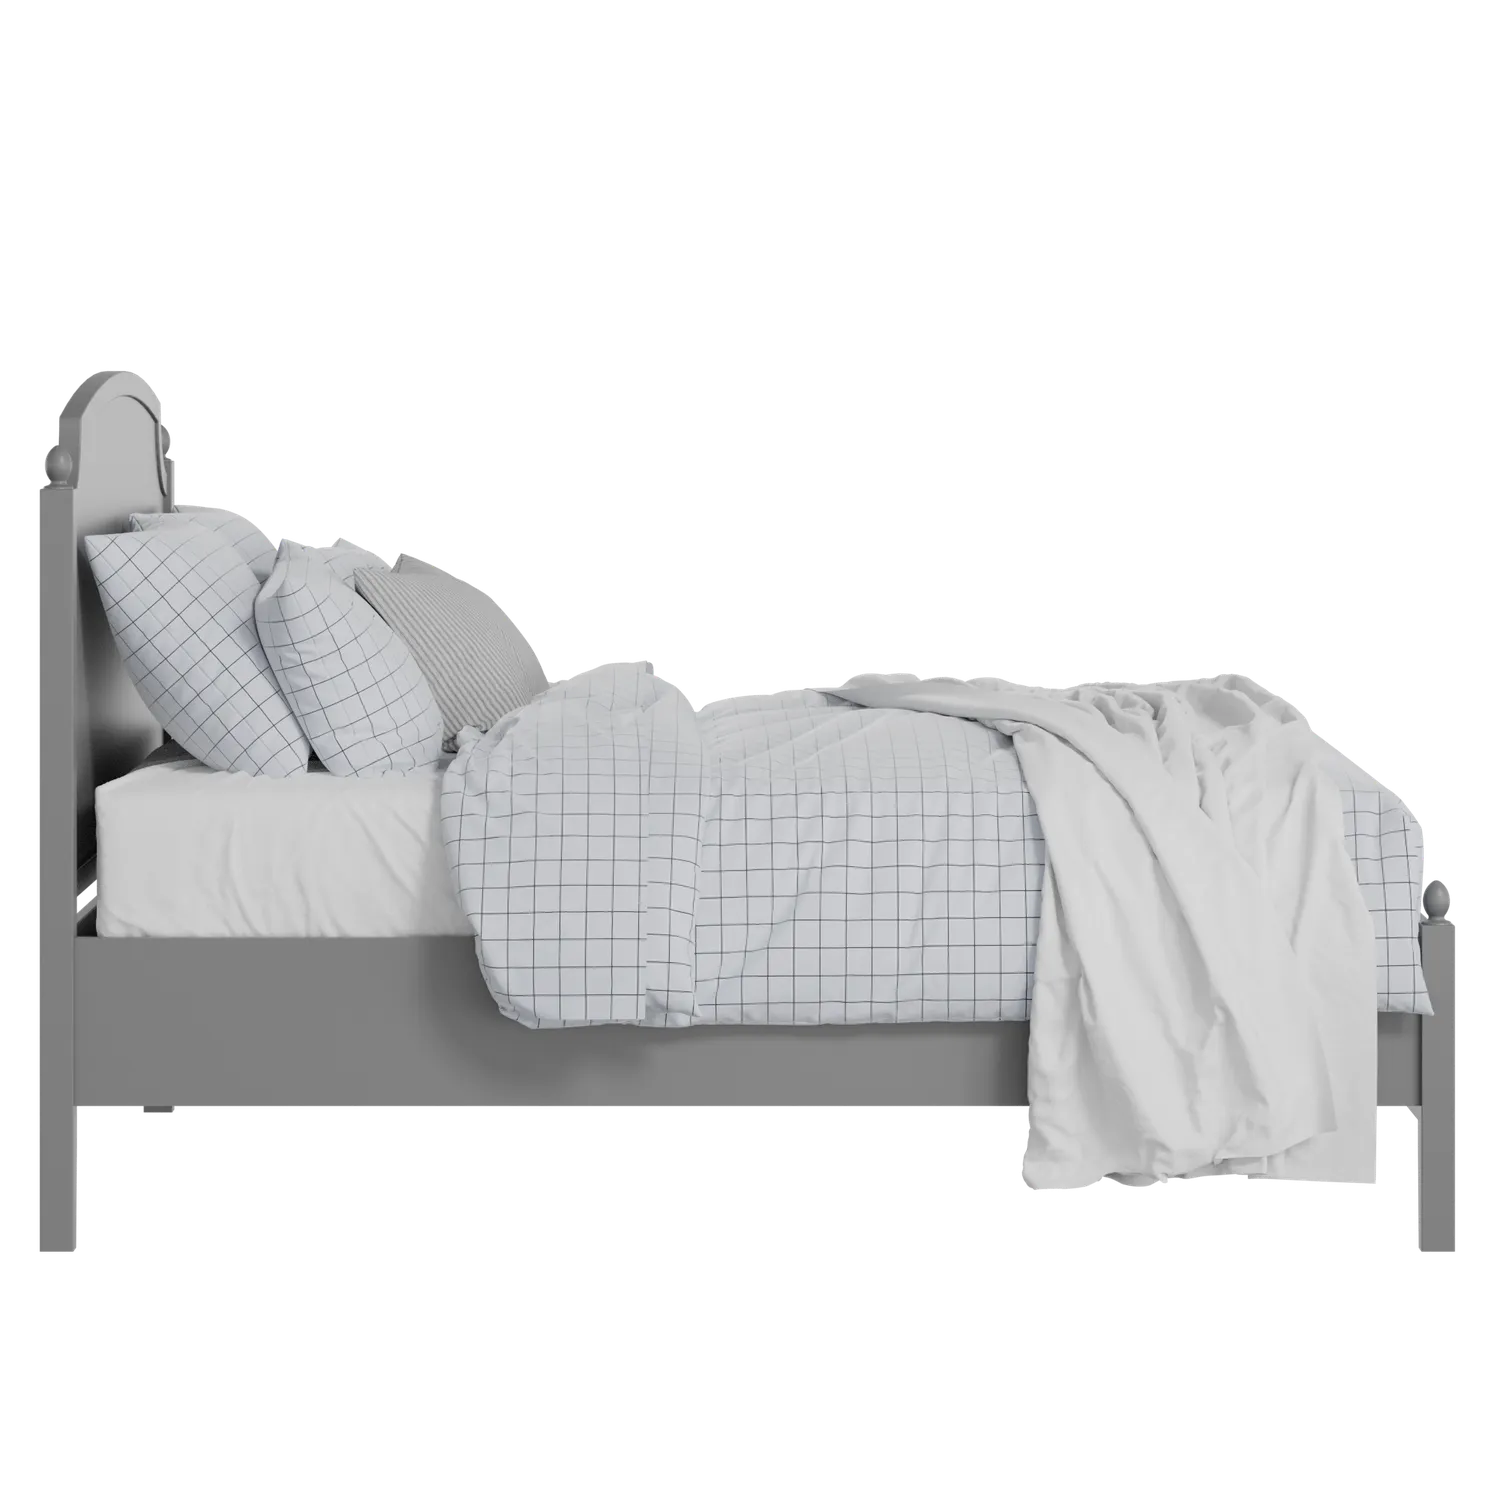 Kipling Slim painted wood bed in grey with Juno mattress